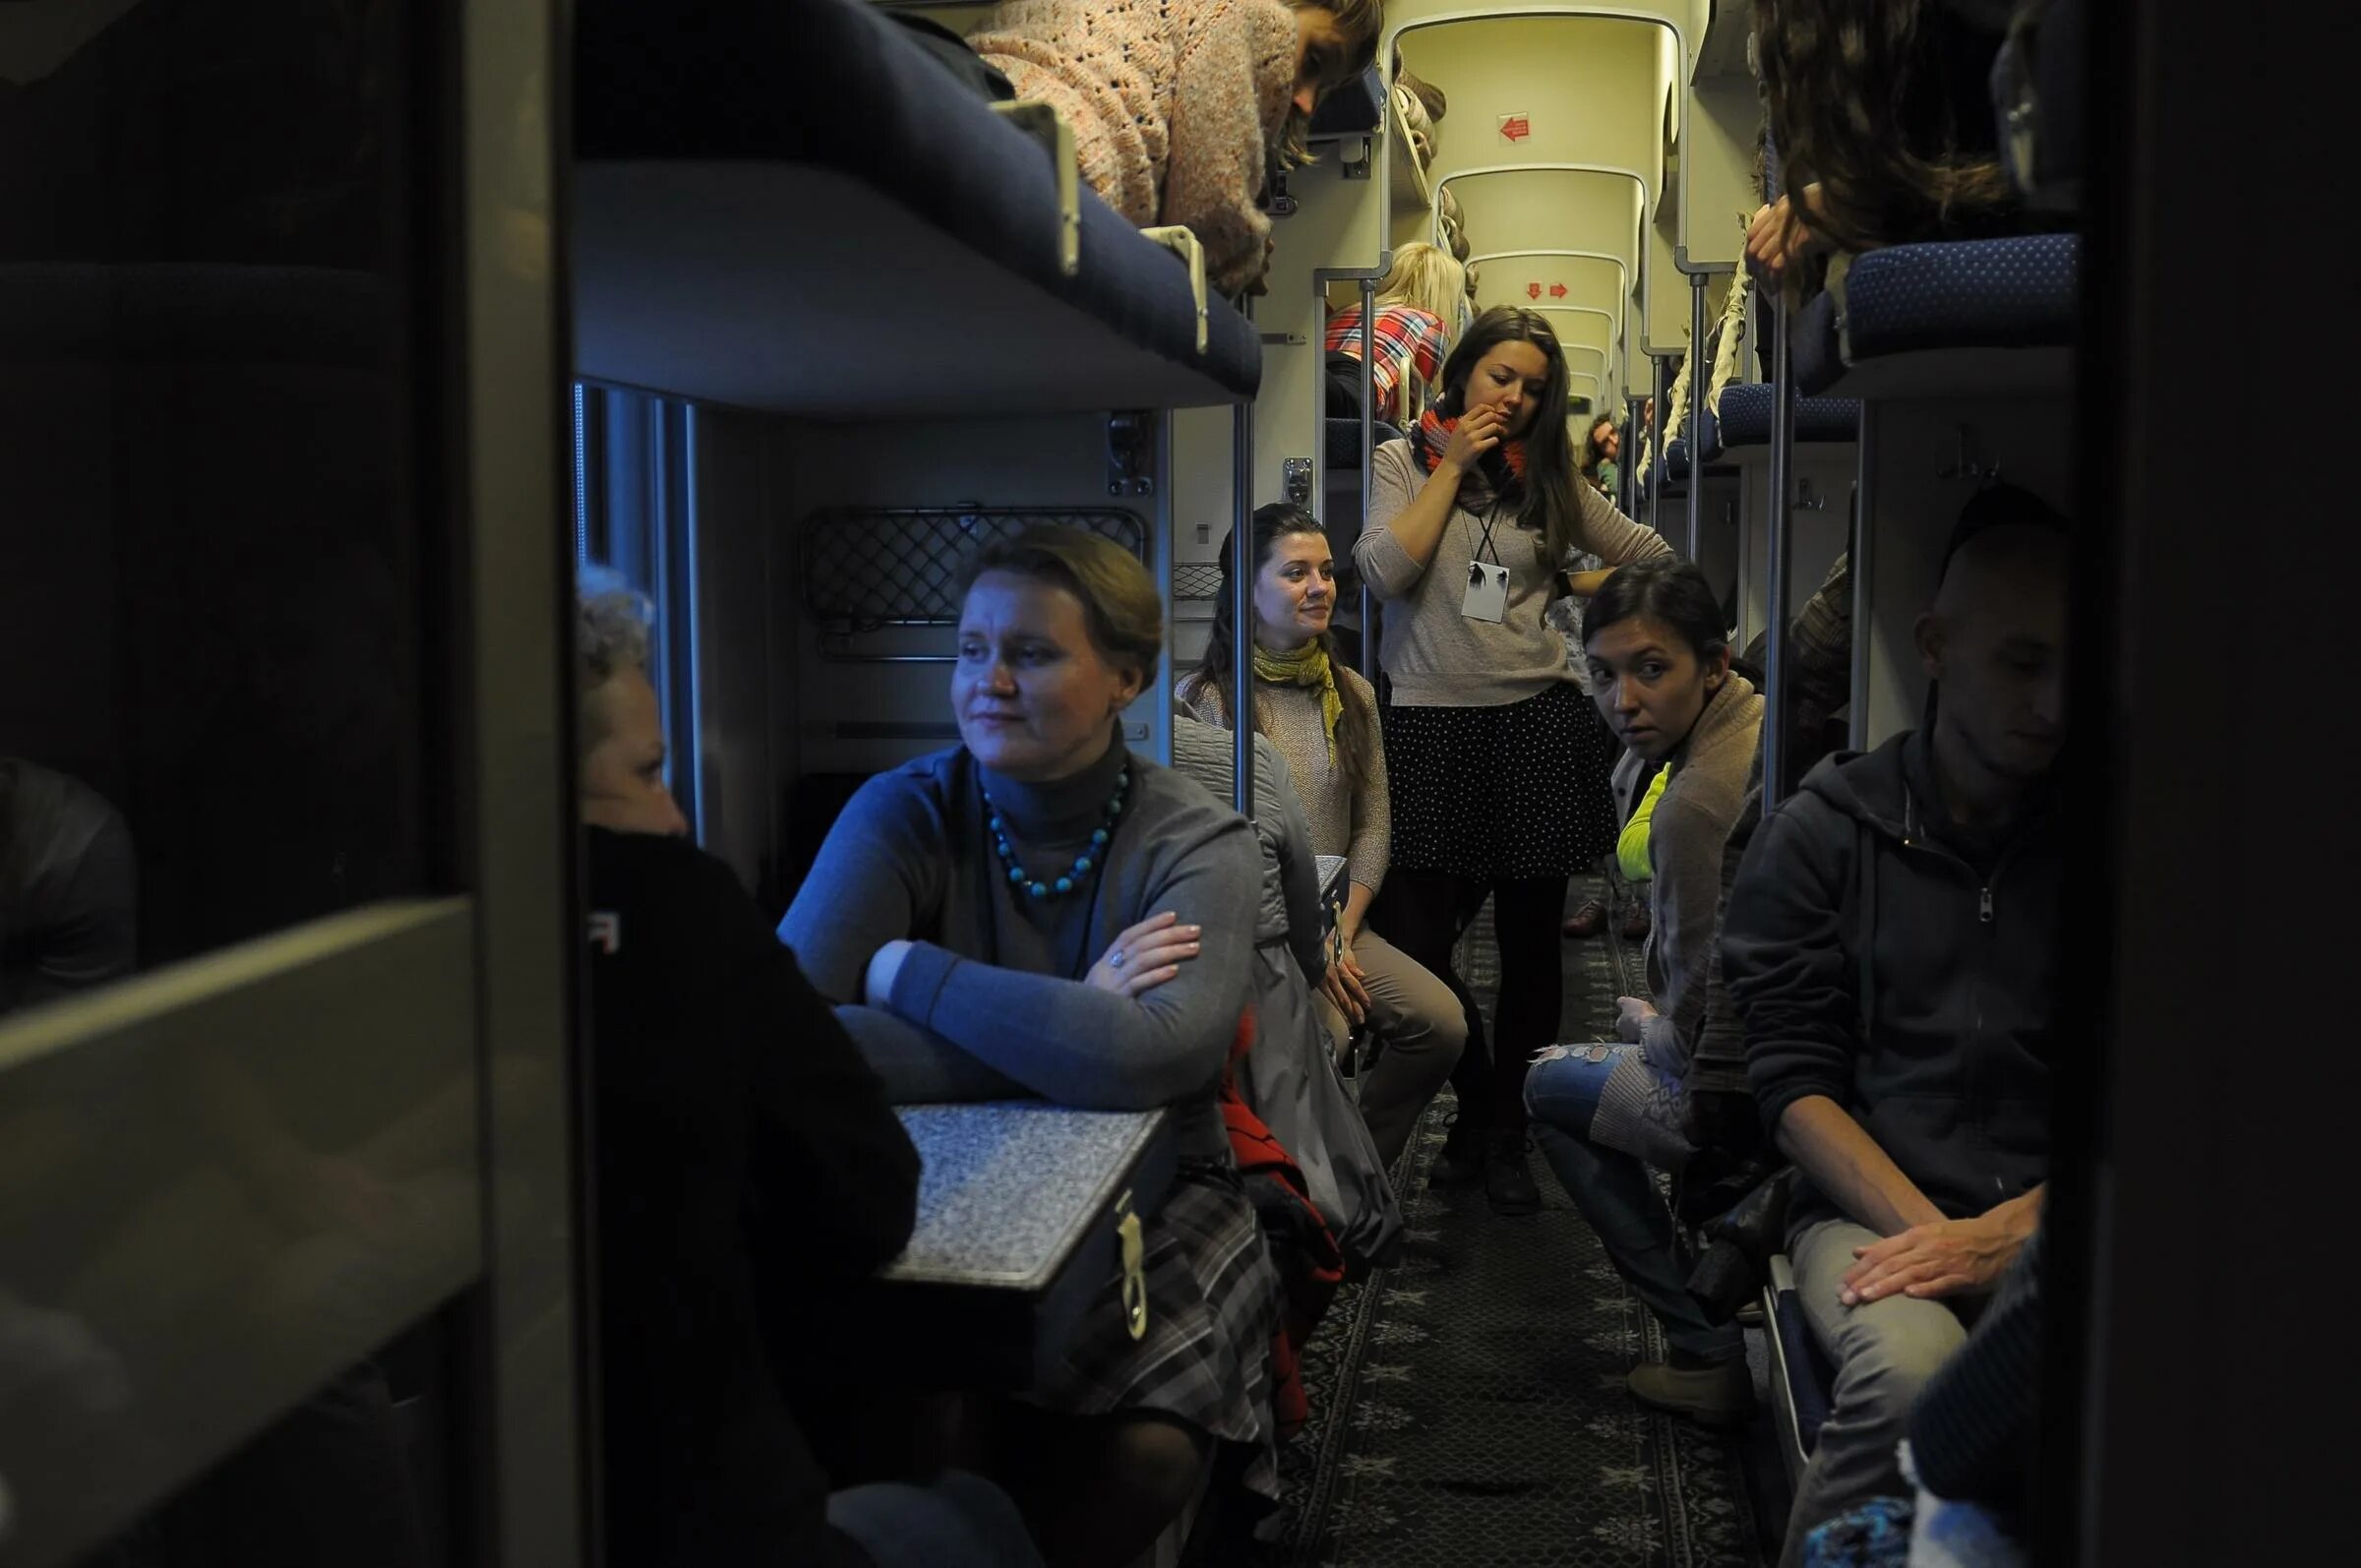 Лучший интернет в поезд. Поезд внутри с людьми. Пассажиры в поезде. Вагон поезда. Плацкарт пассажиры.